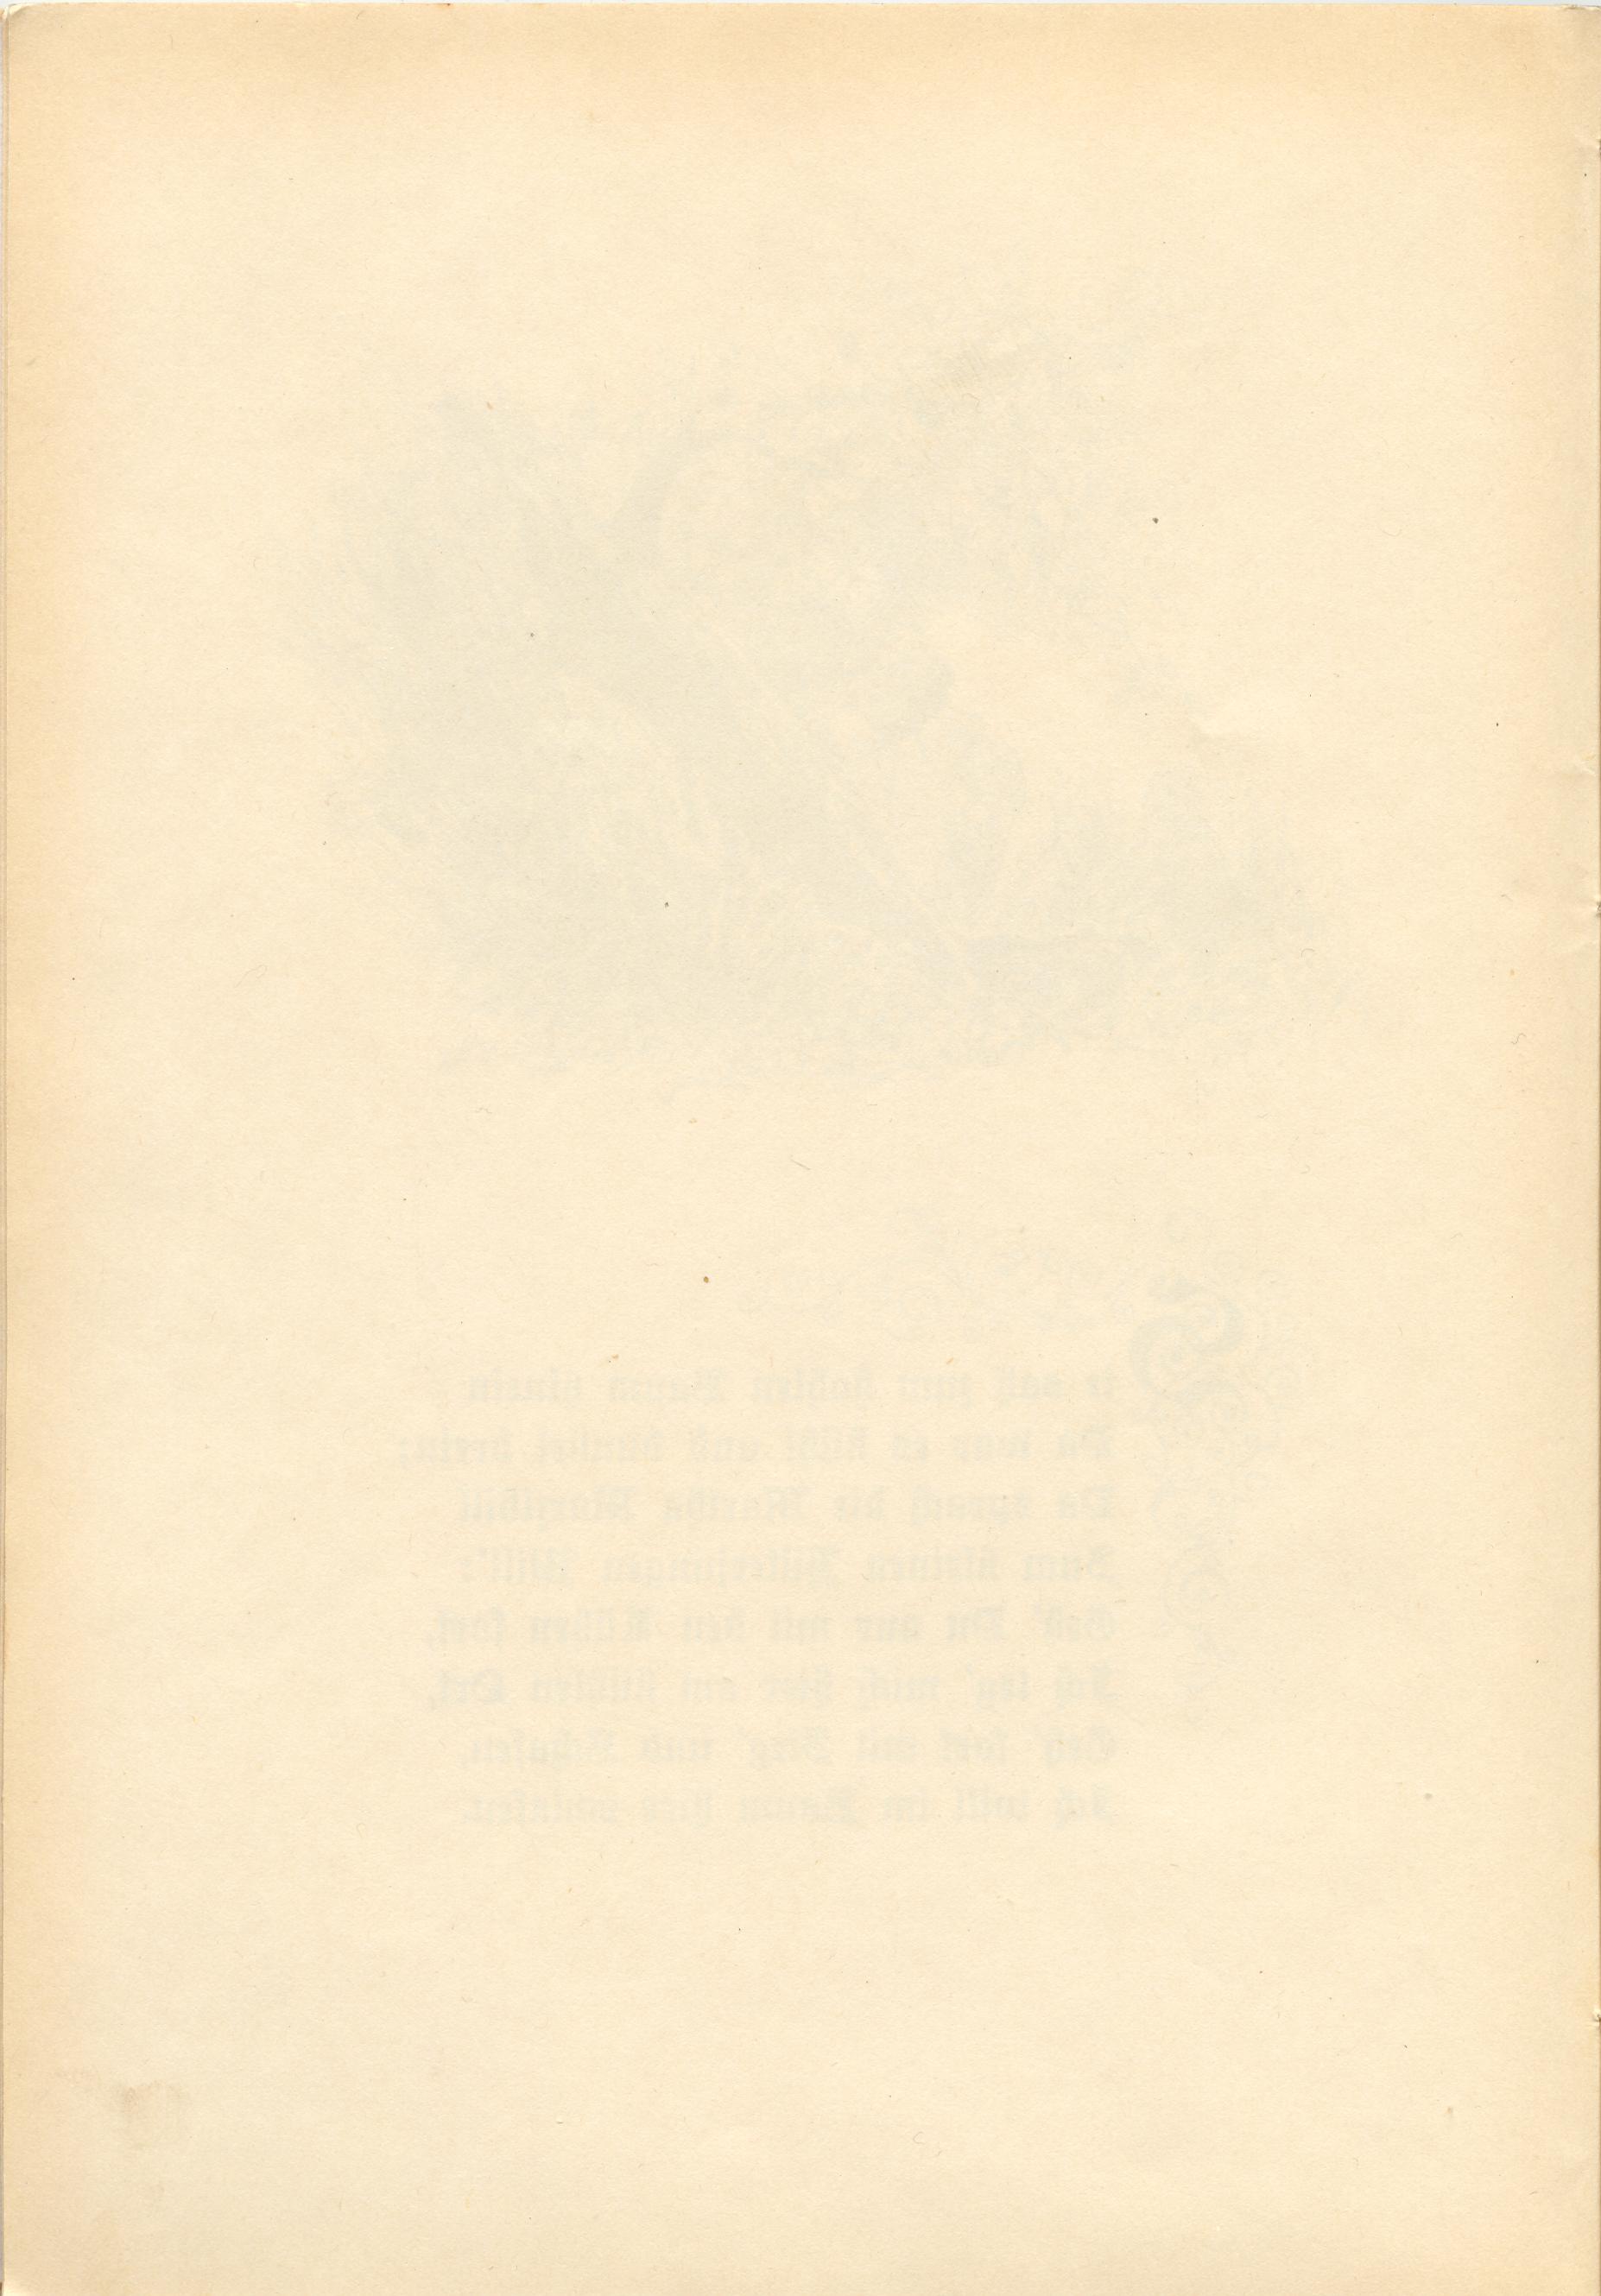 Martha Marzibill (1900) | 10. (8) Main body of text